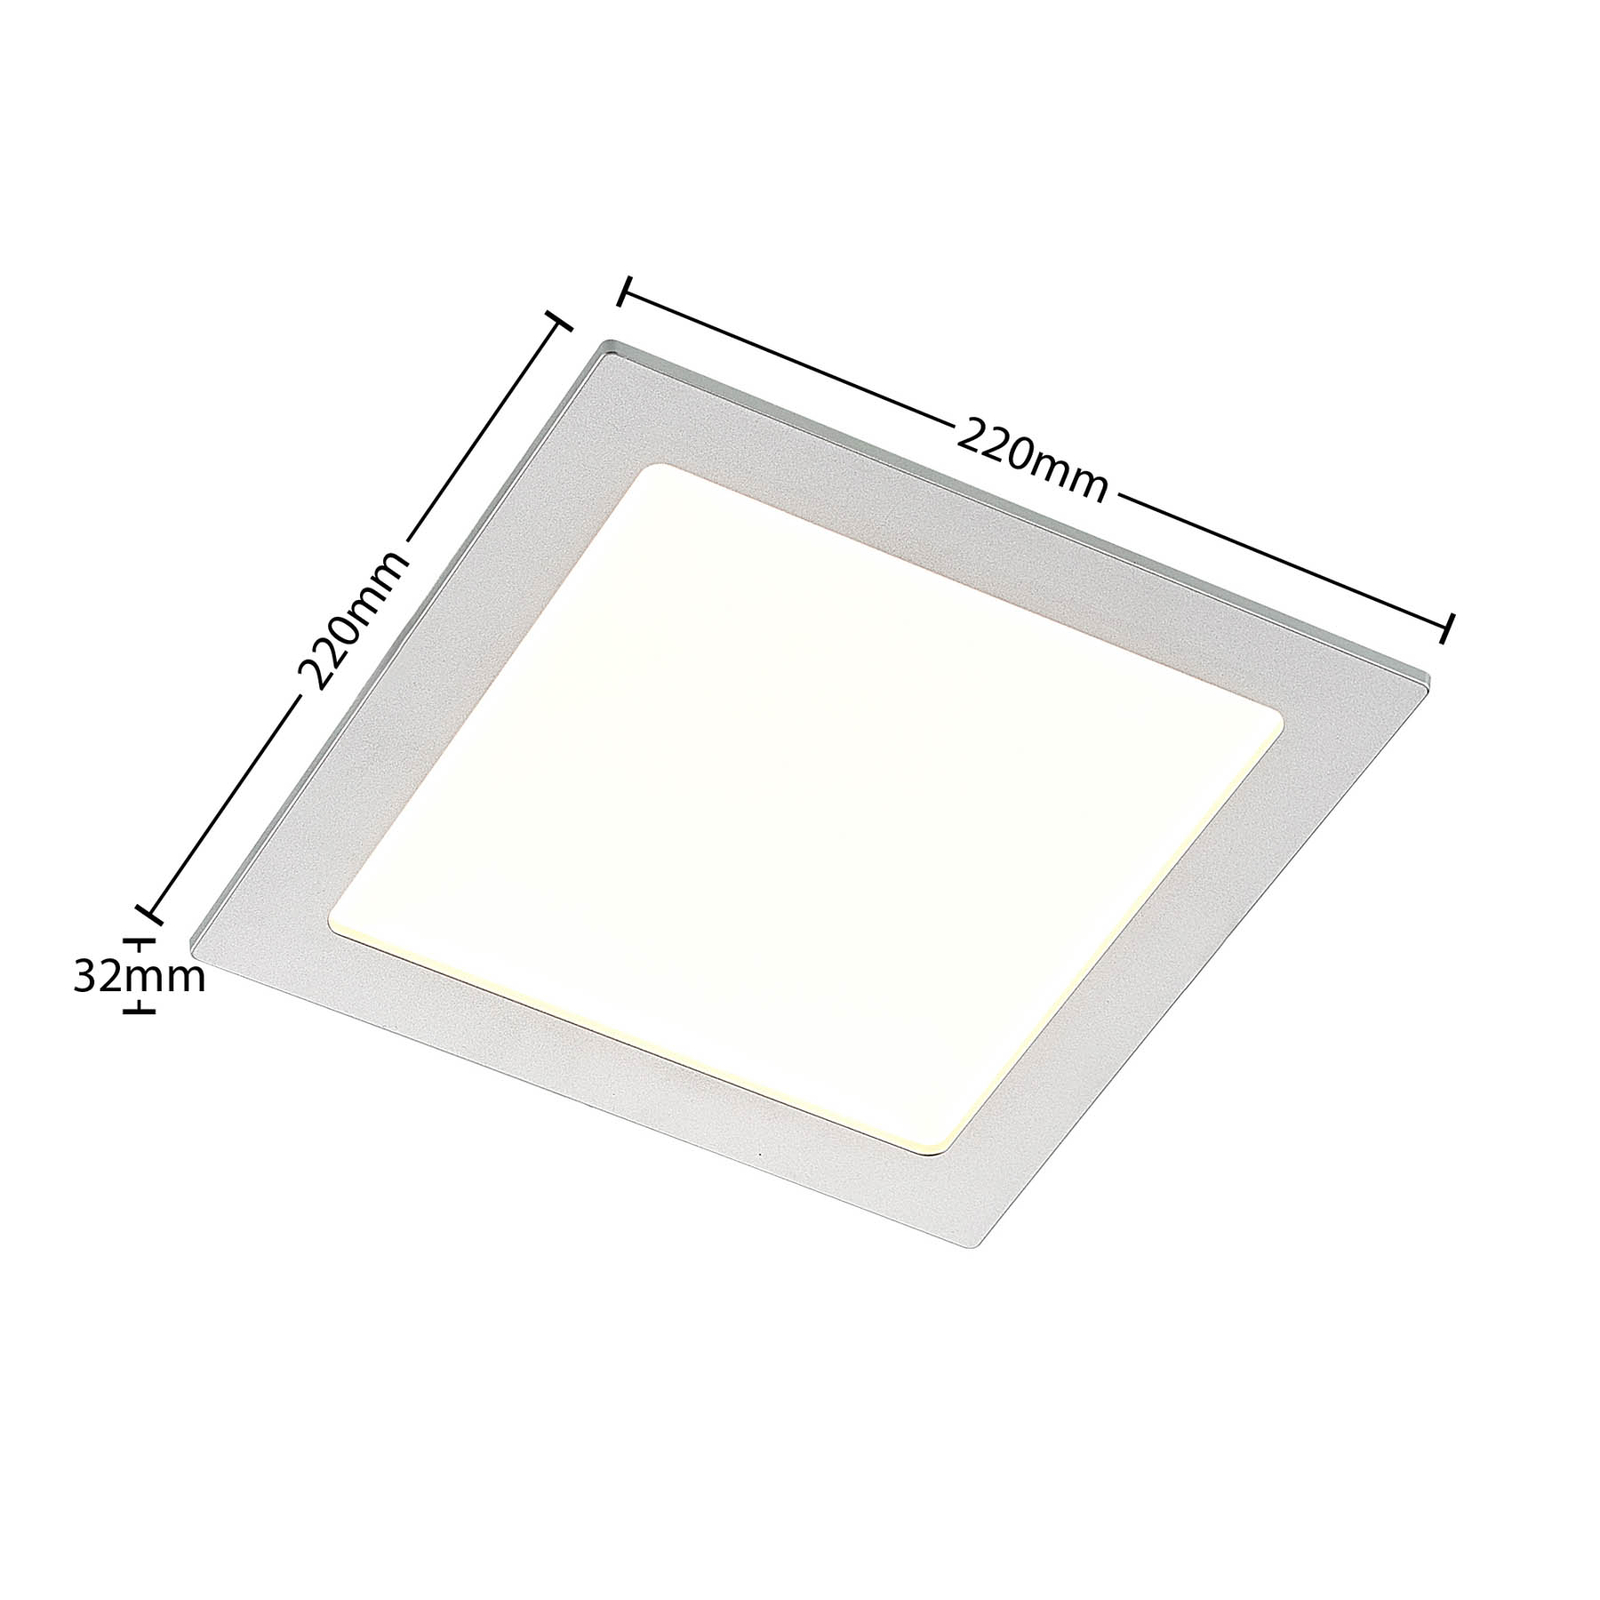 Prios Helina LED-downlight, sølv, 22 cm, 18 W